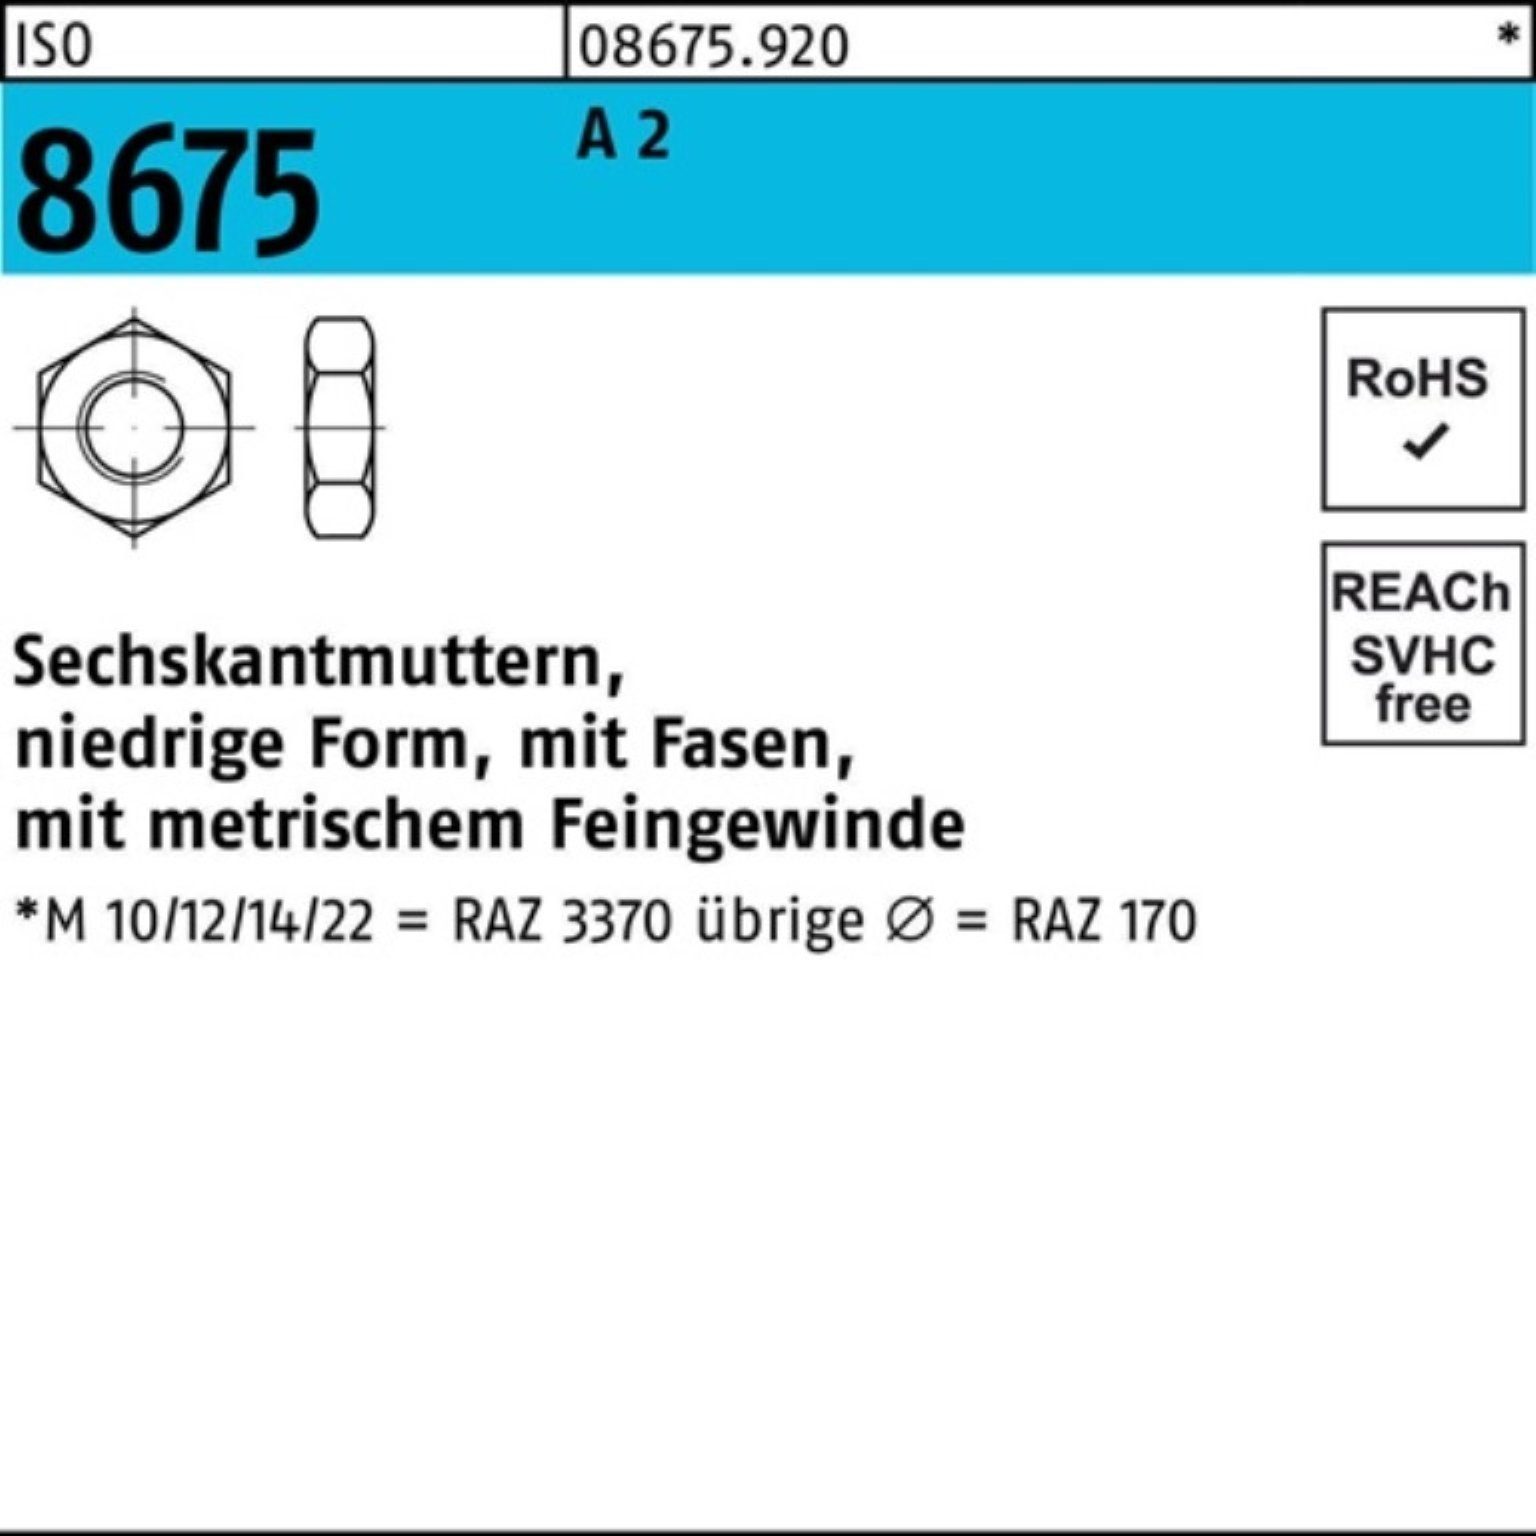 8 Stück ISO ISO Reyher 25 Fasen 1,5 A Pack Sechskantmutter M14x 8675 Muttern 2 100er